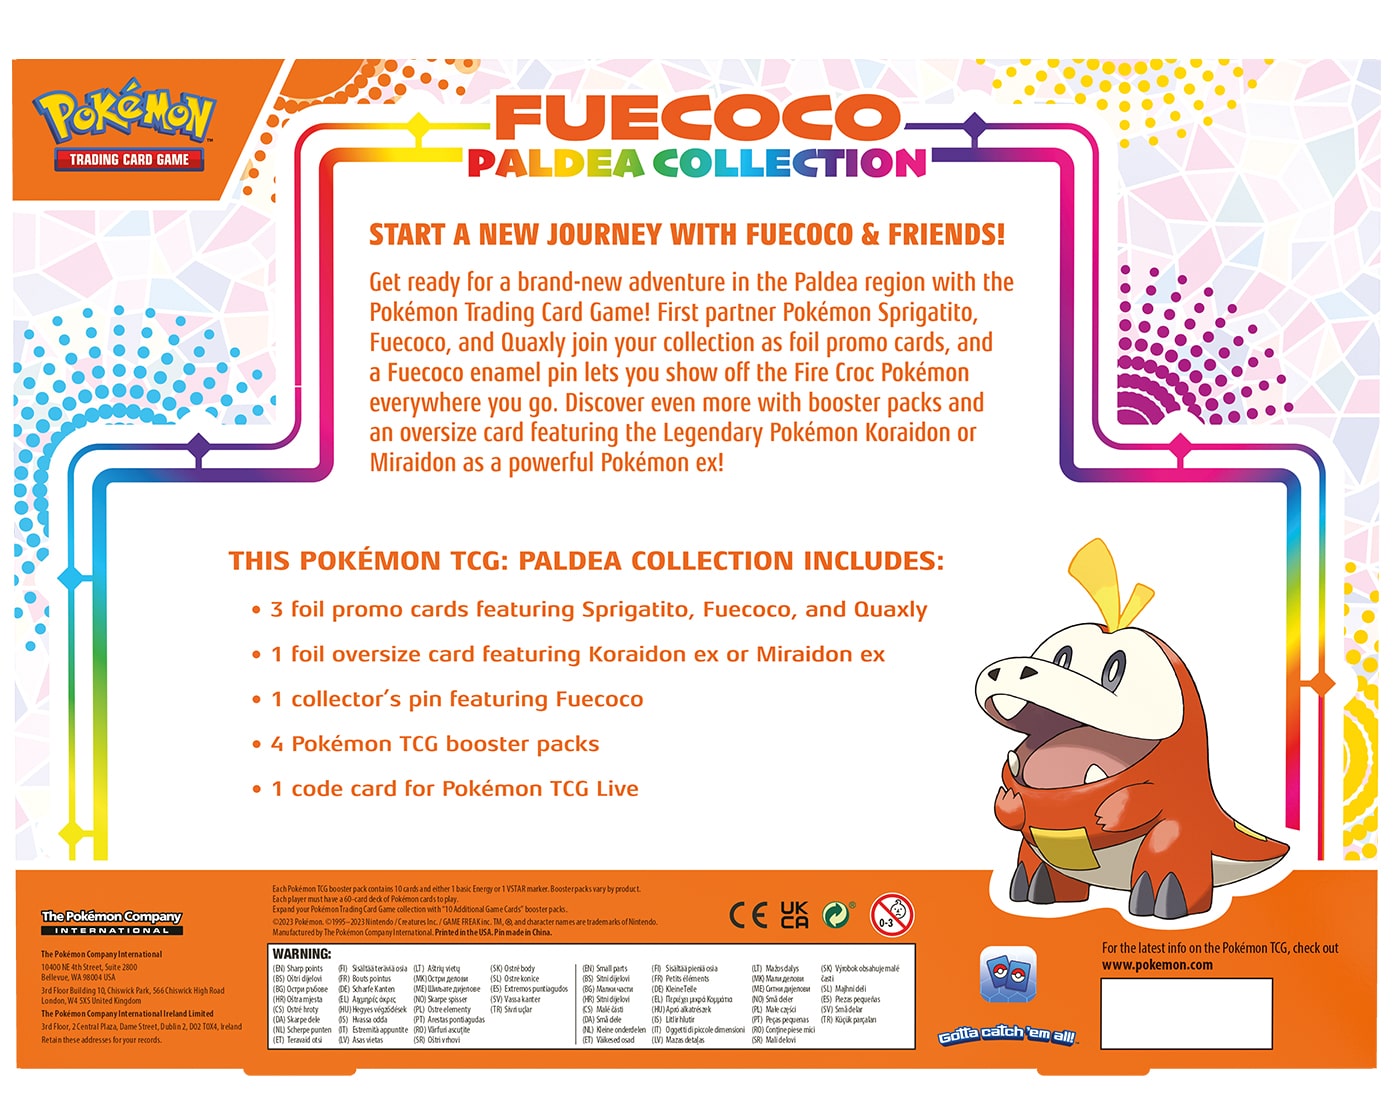 Pokémon Fuecoco Paldea Collection Box - EN